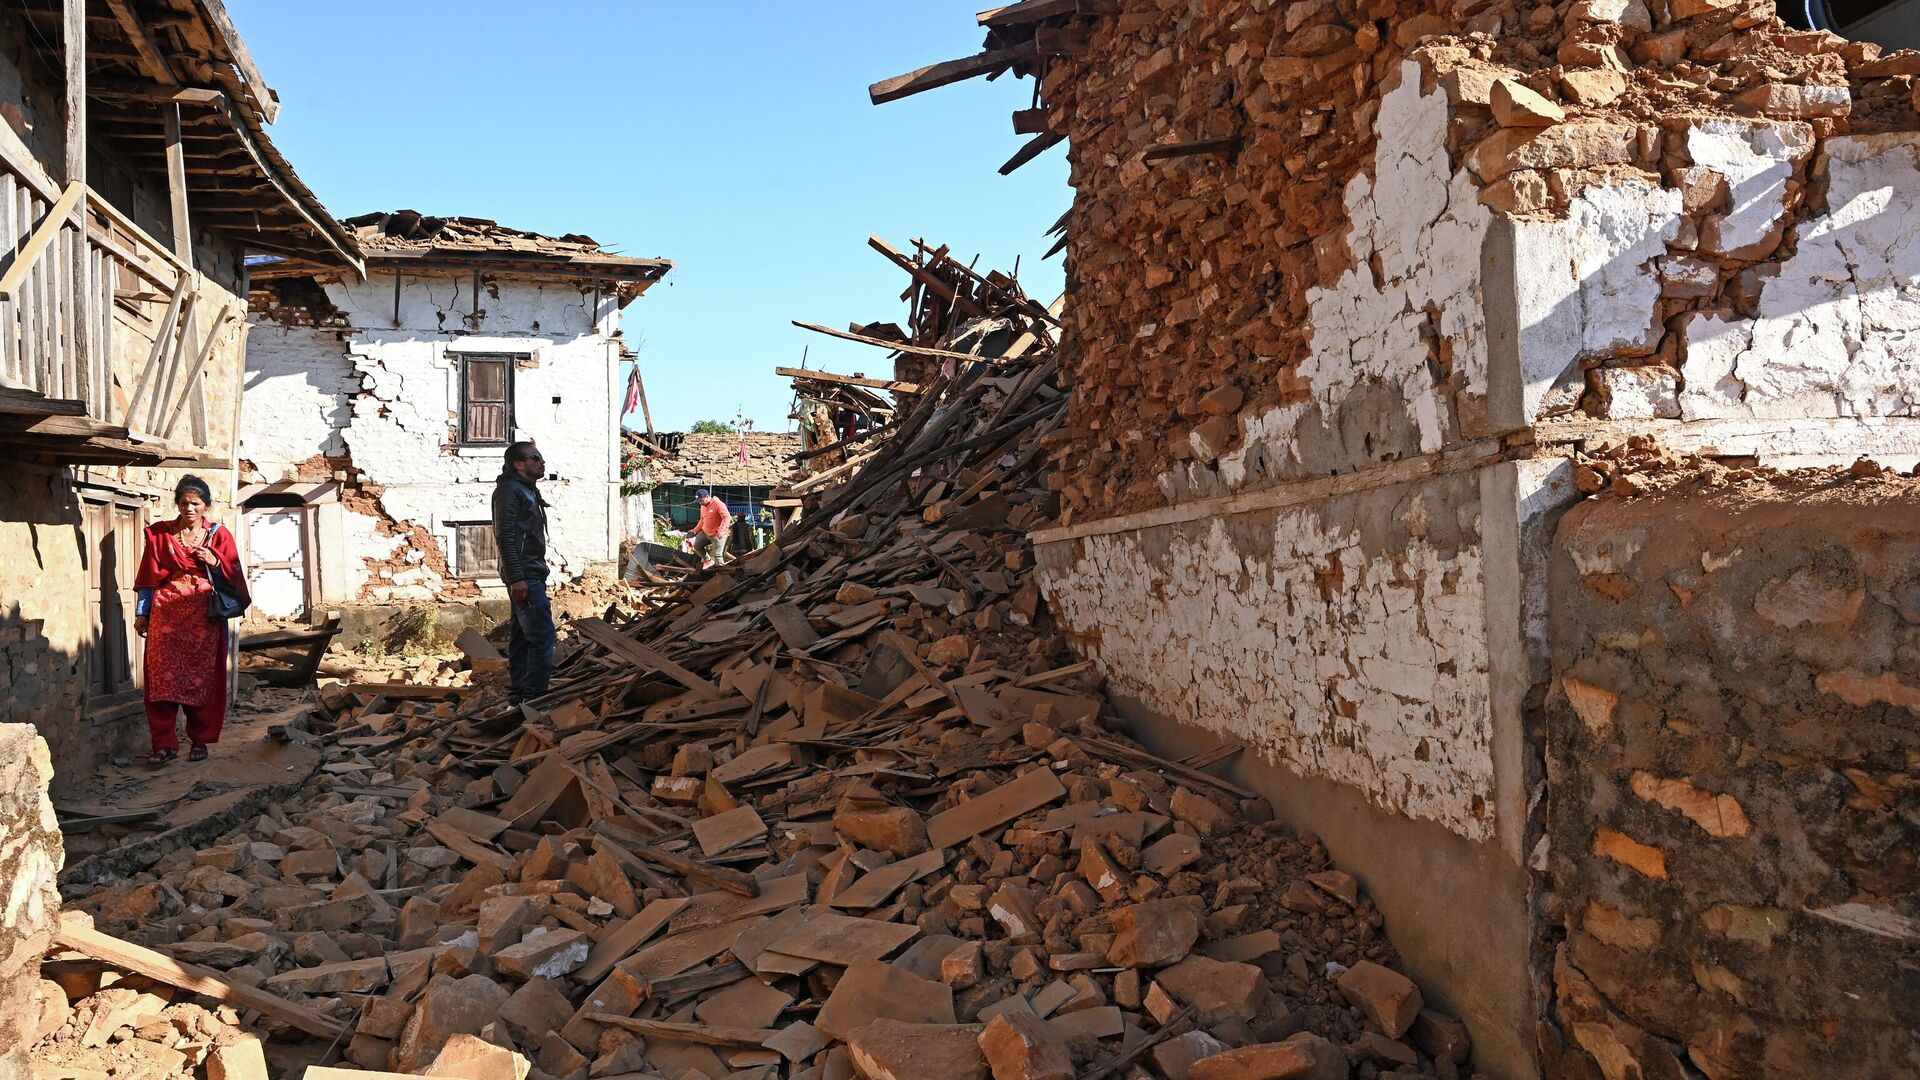 Сильное землетрясение, которое произошло на границе Индии и Непала, унесло жизни более сотни человек и оставило многих без крова. По последним данным, число погибших достигло 128, а пострадавших — 100. Это число может увеличиться, так как спасатели п...